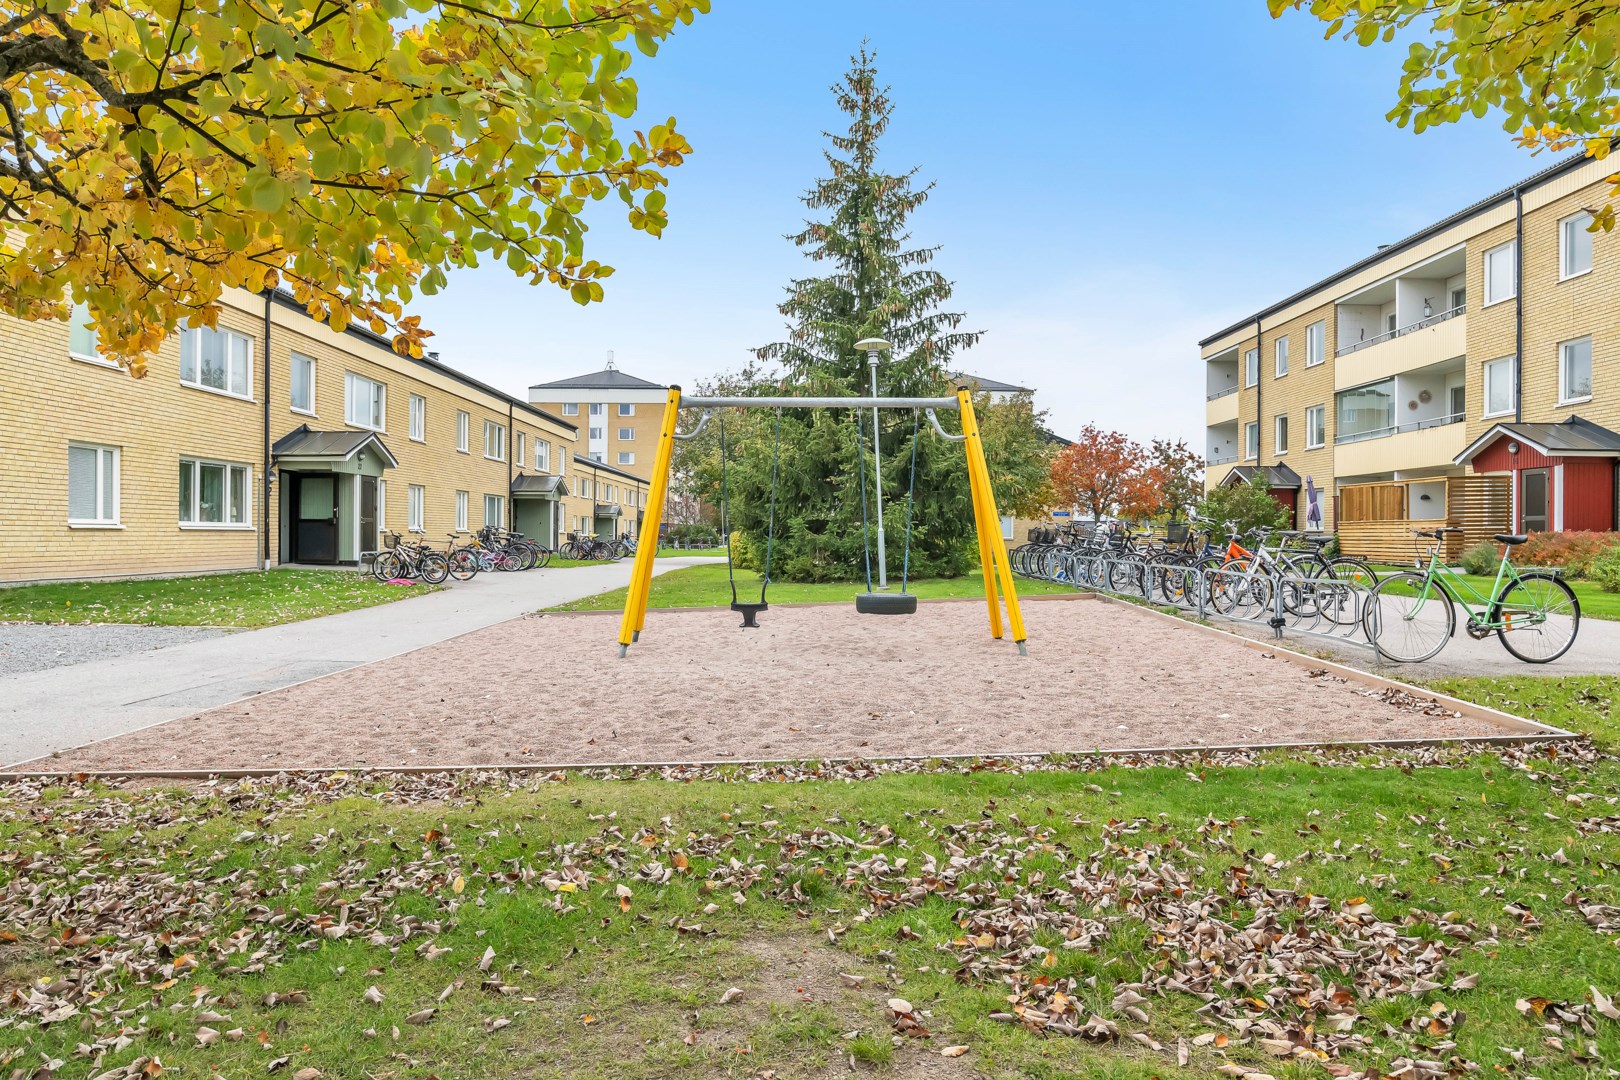 Bostadsbild från Viktor Rydbergsgatan 4, Kommande i Nyby, Uppsala